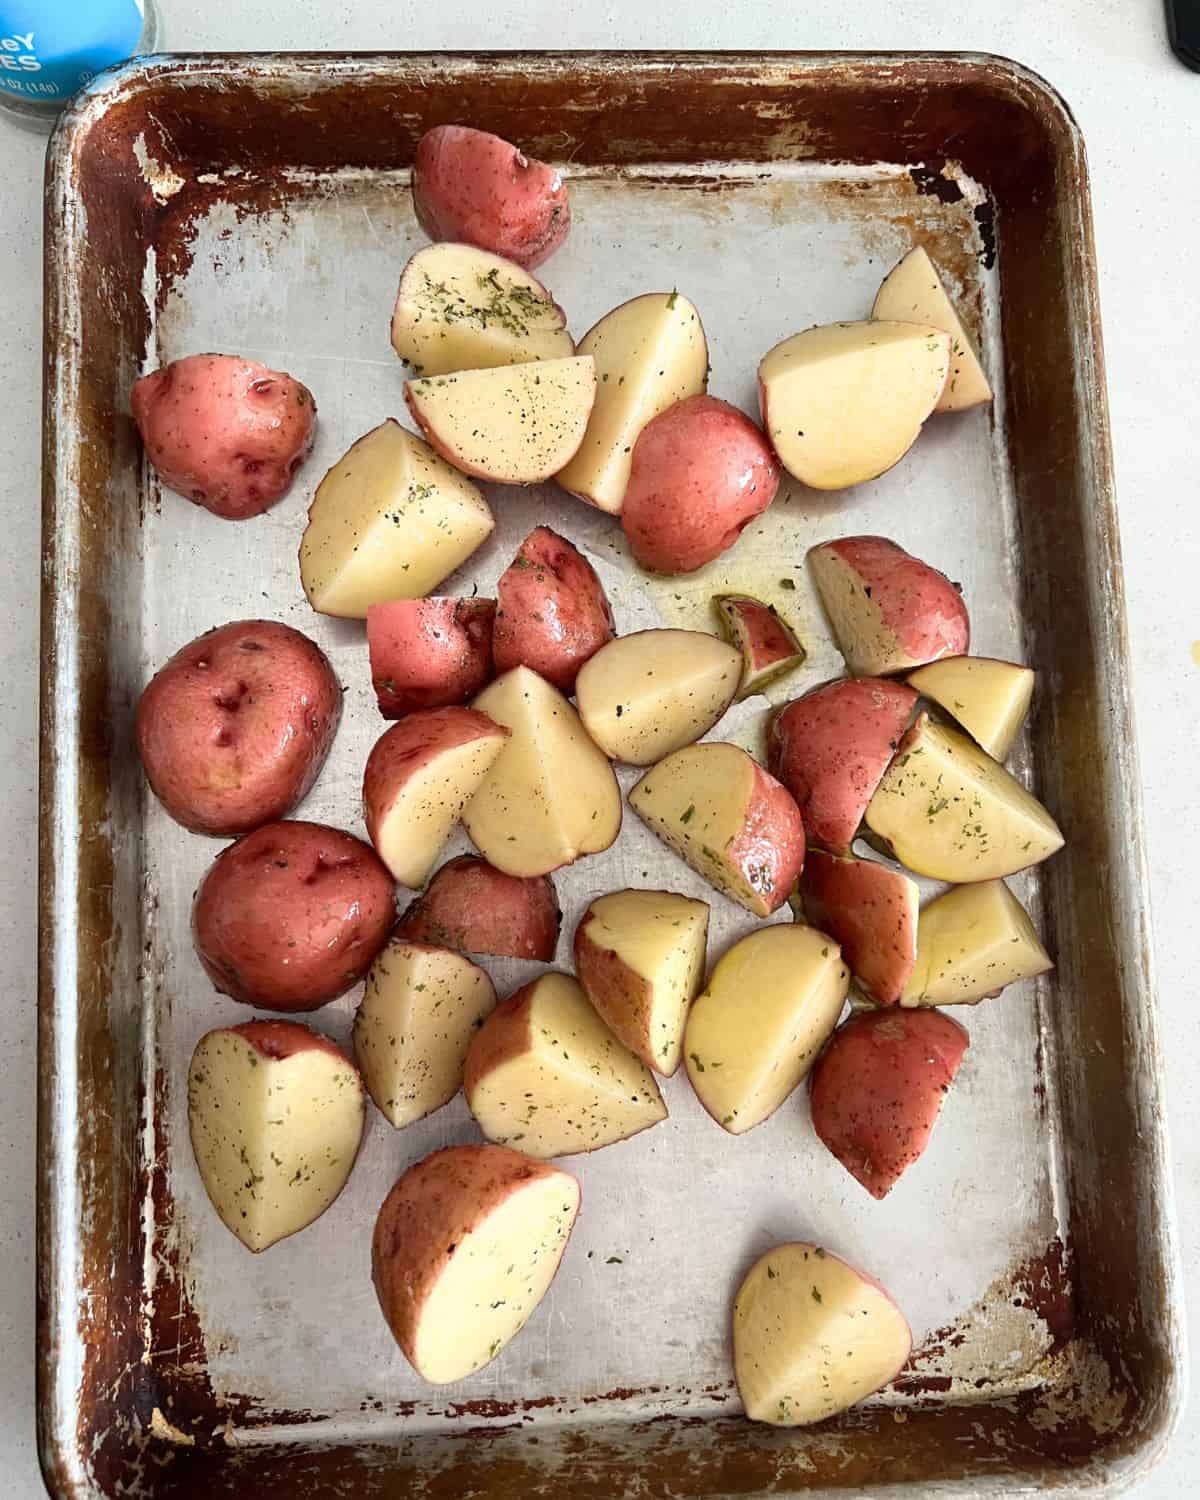 Seasoned potatoes on a sheet pan. 